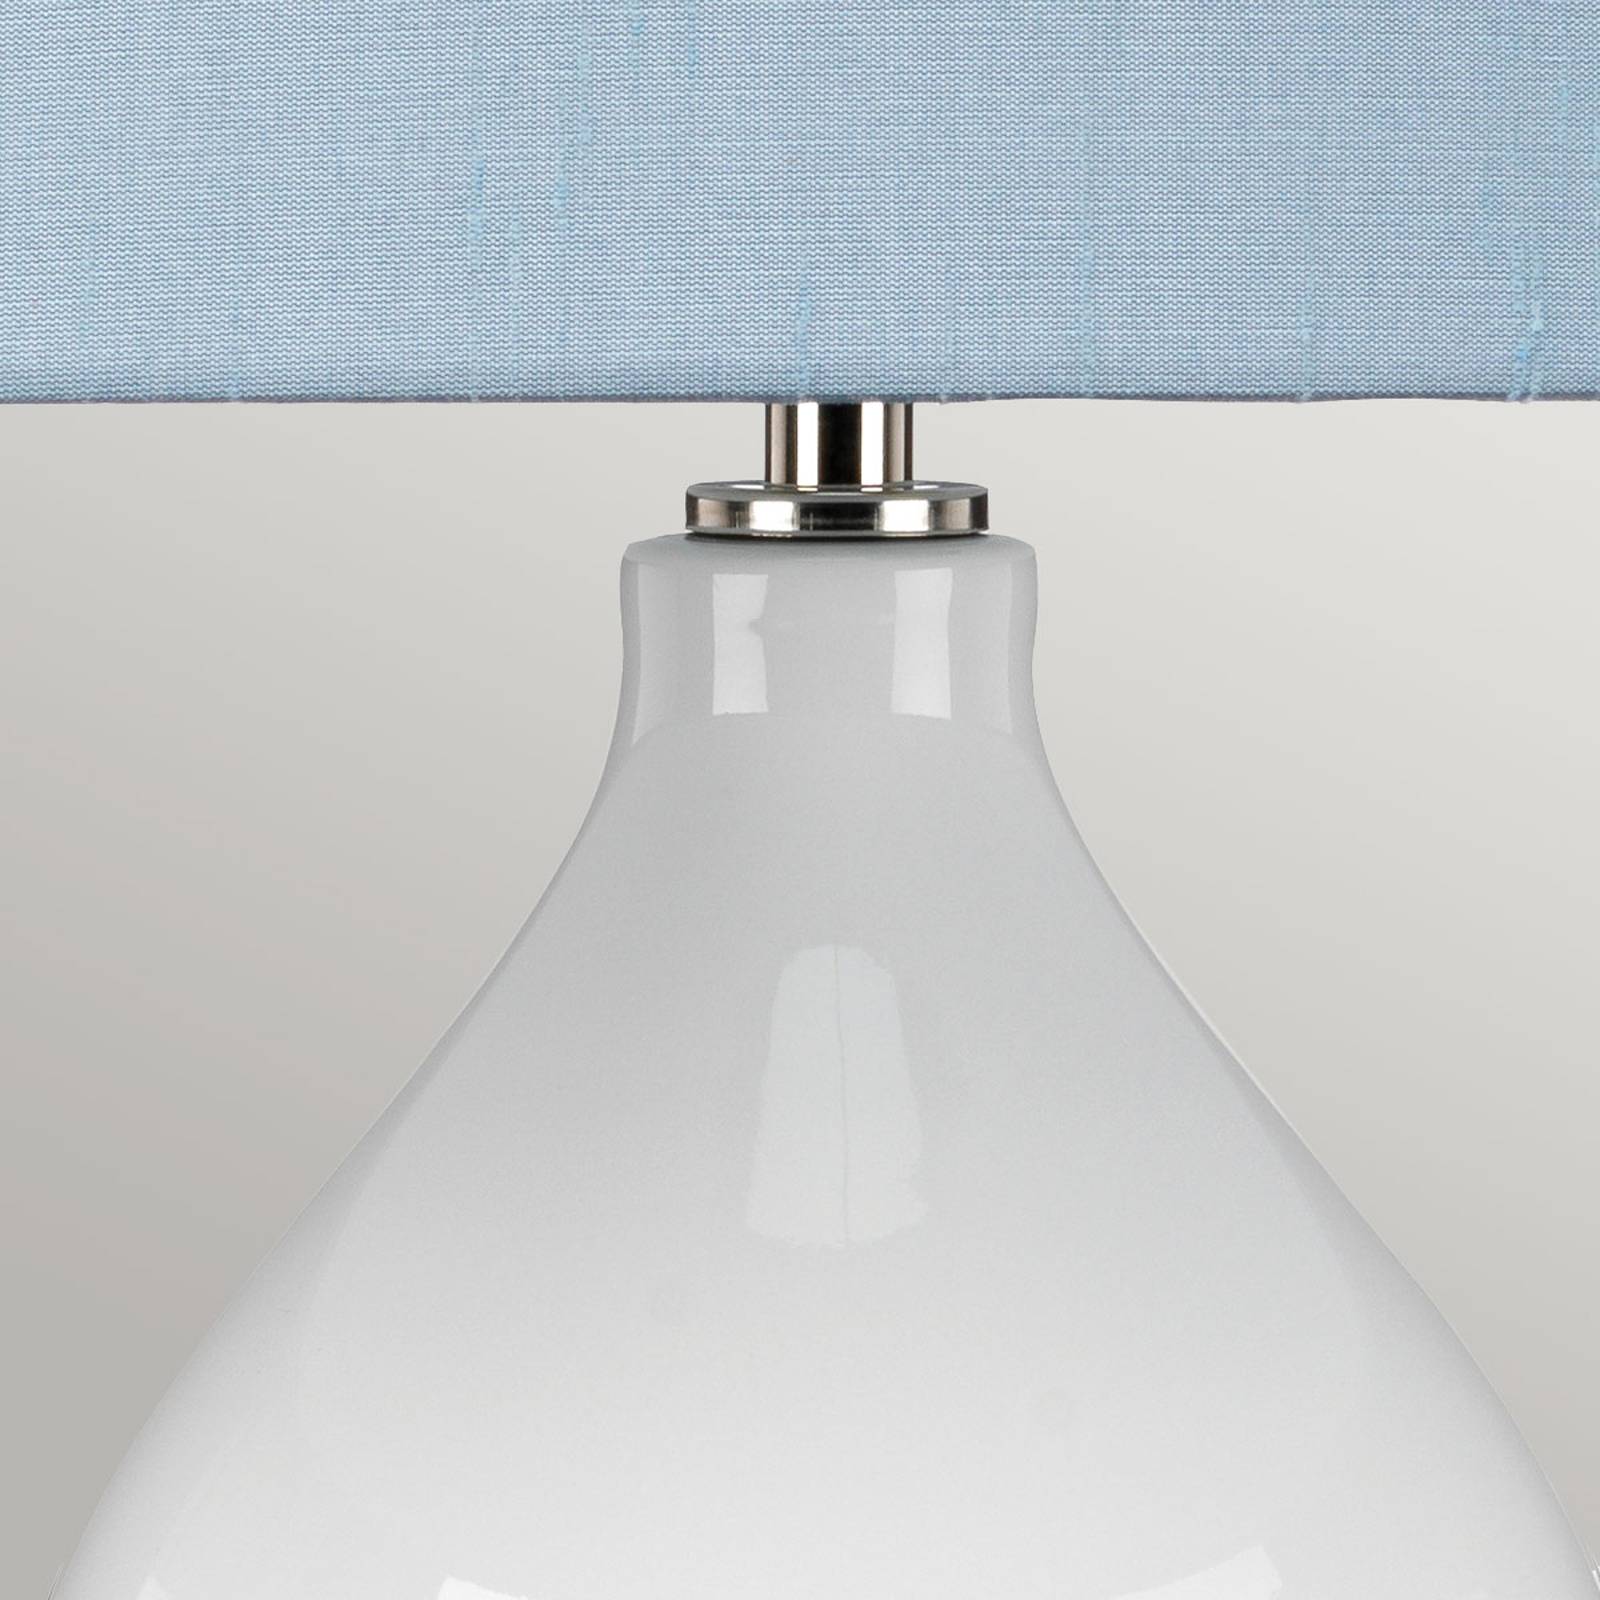 Textil-Tischlampe Isla nickel poliert/blau von ELSTEAD